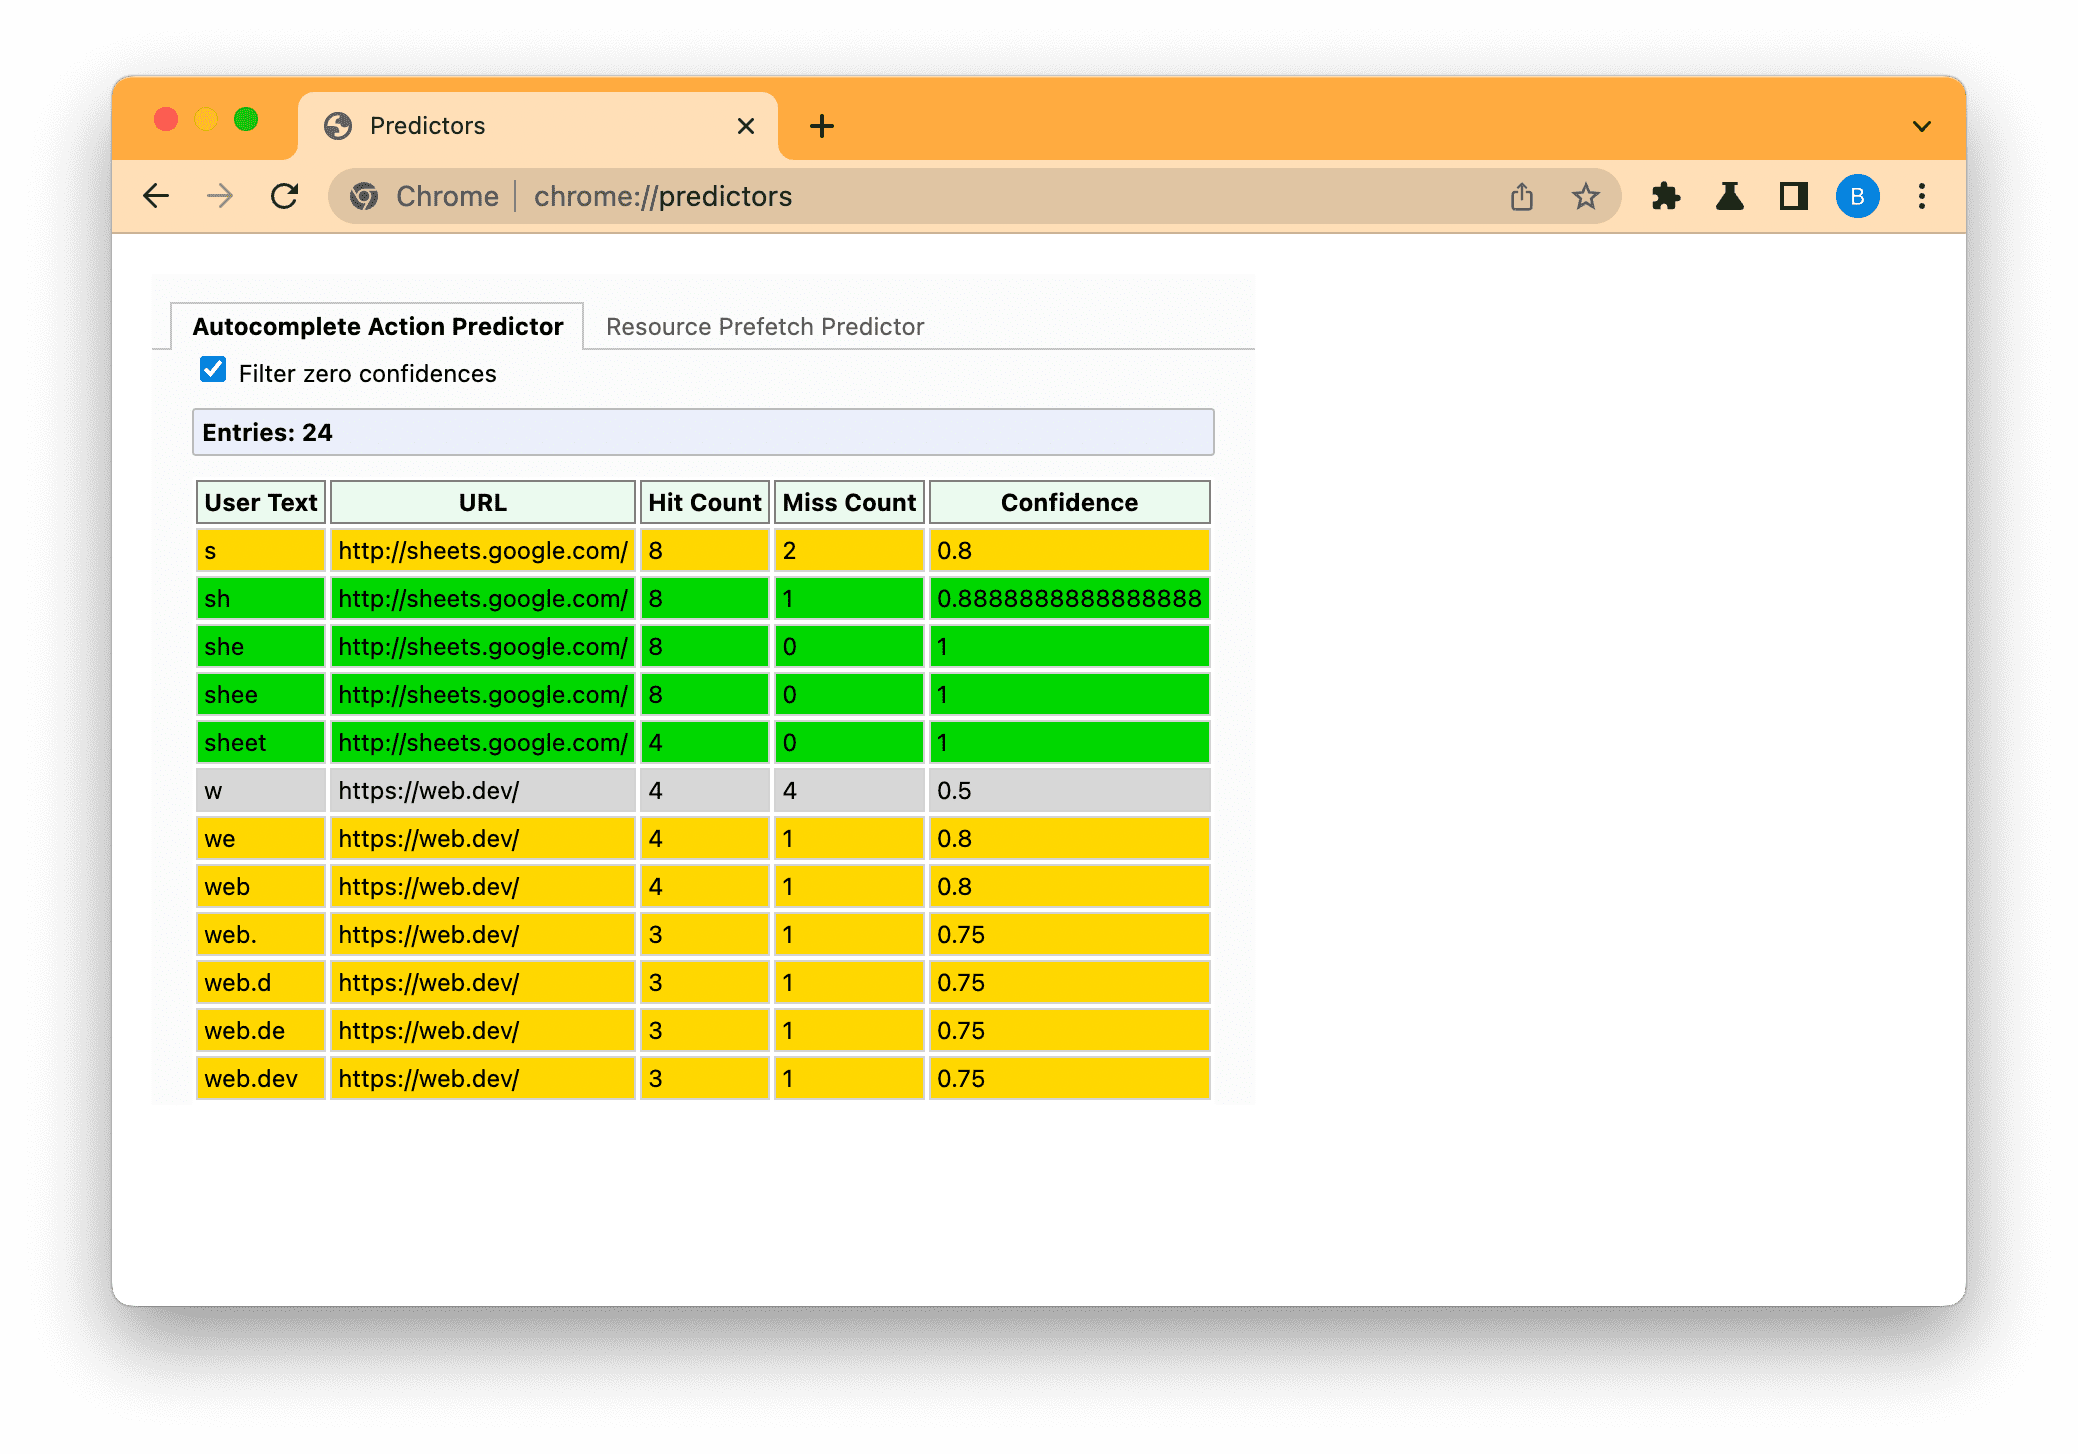 Chrome का अनुमान लगाने वाला पेज, डाले गए टेक्स्ट के आधार पर कम (स्लेटी), मीडियम (ऐंबर), और ज़्यादा (हरा) अनुमान दिखाने के लिए फ़िल्टर किया गया है.